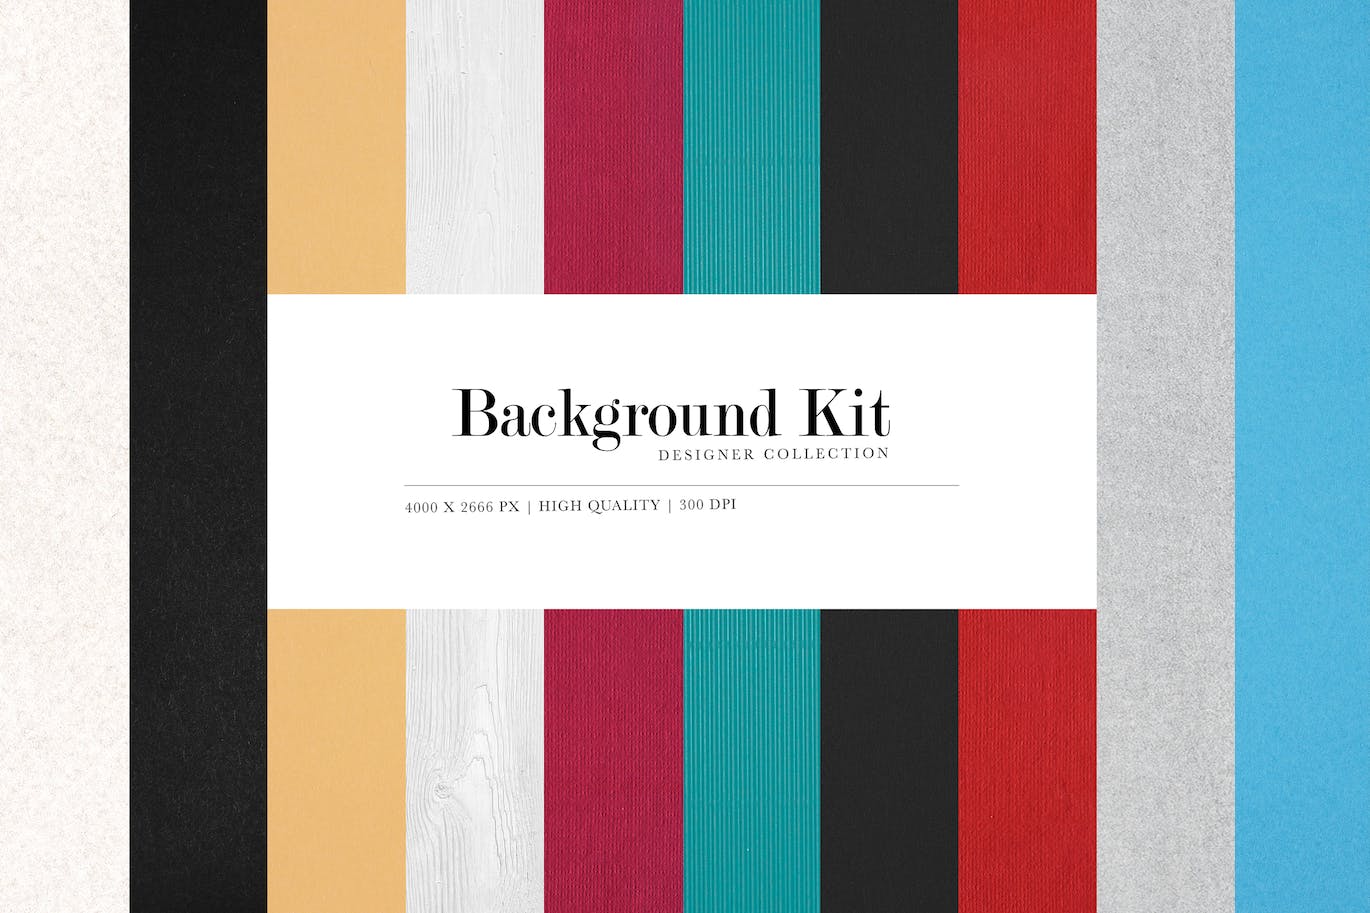 高分辨率通用背景纹理设计素材v9 Background Kit Collection 09